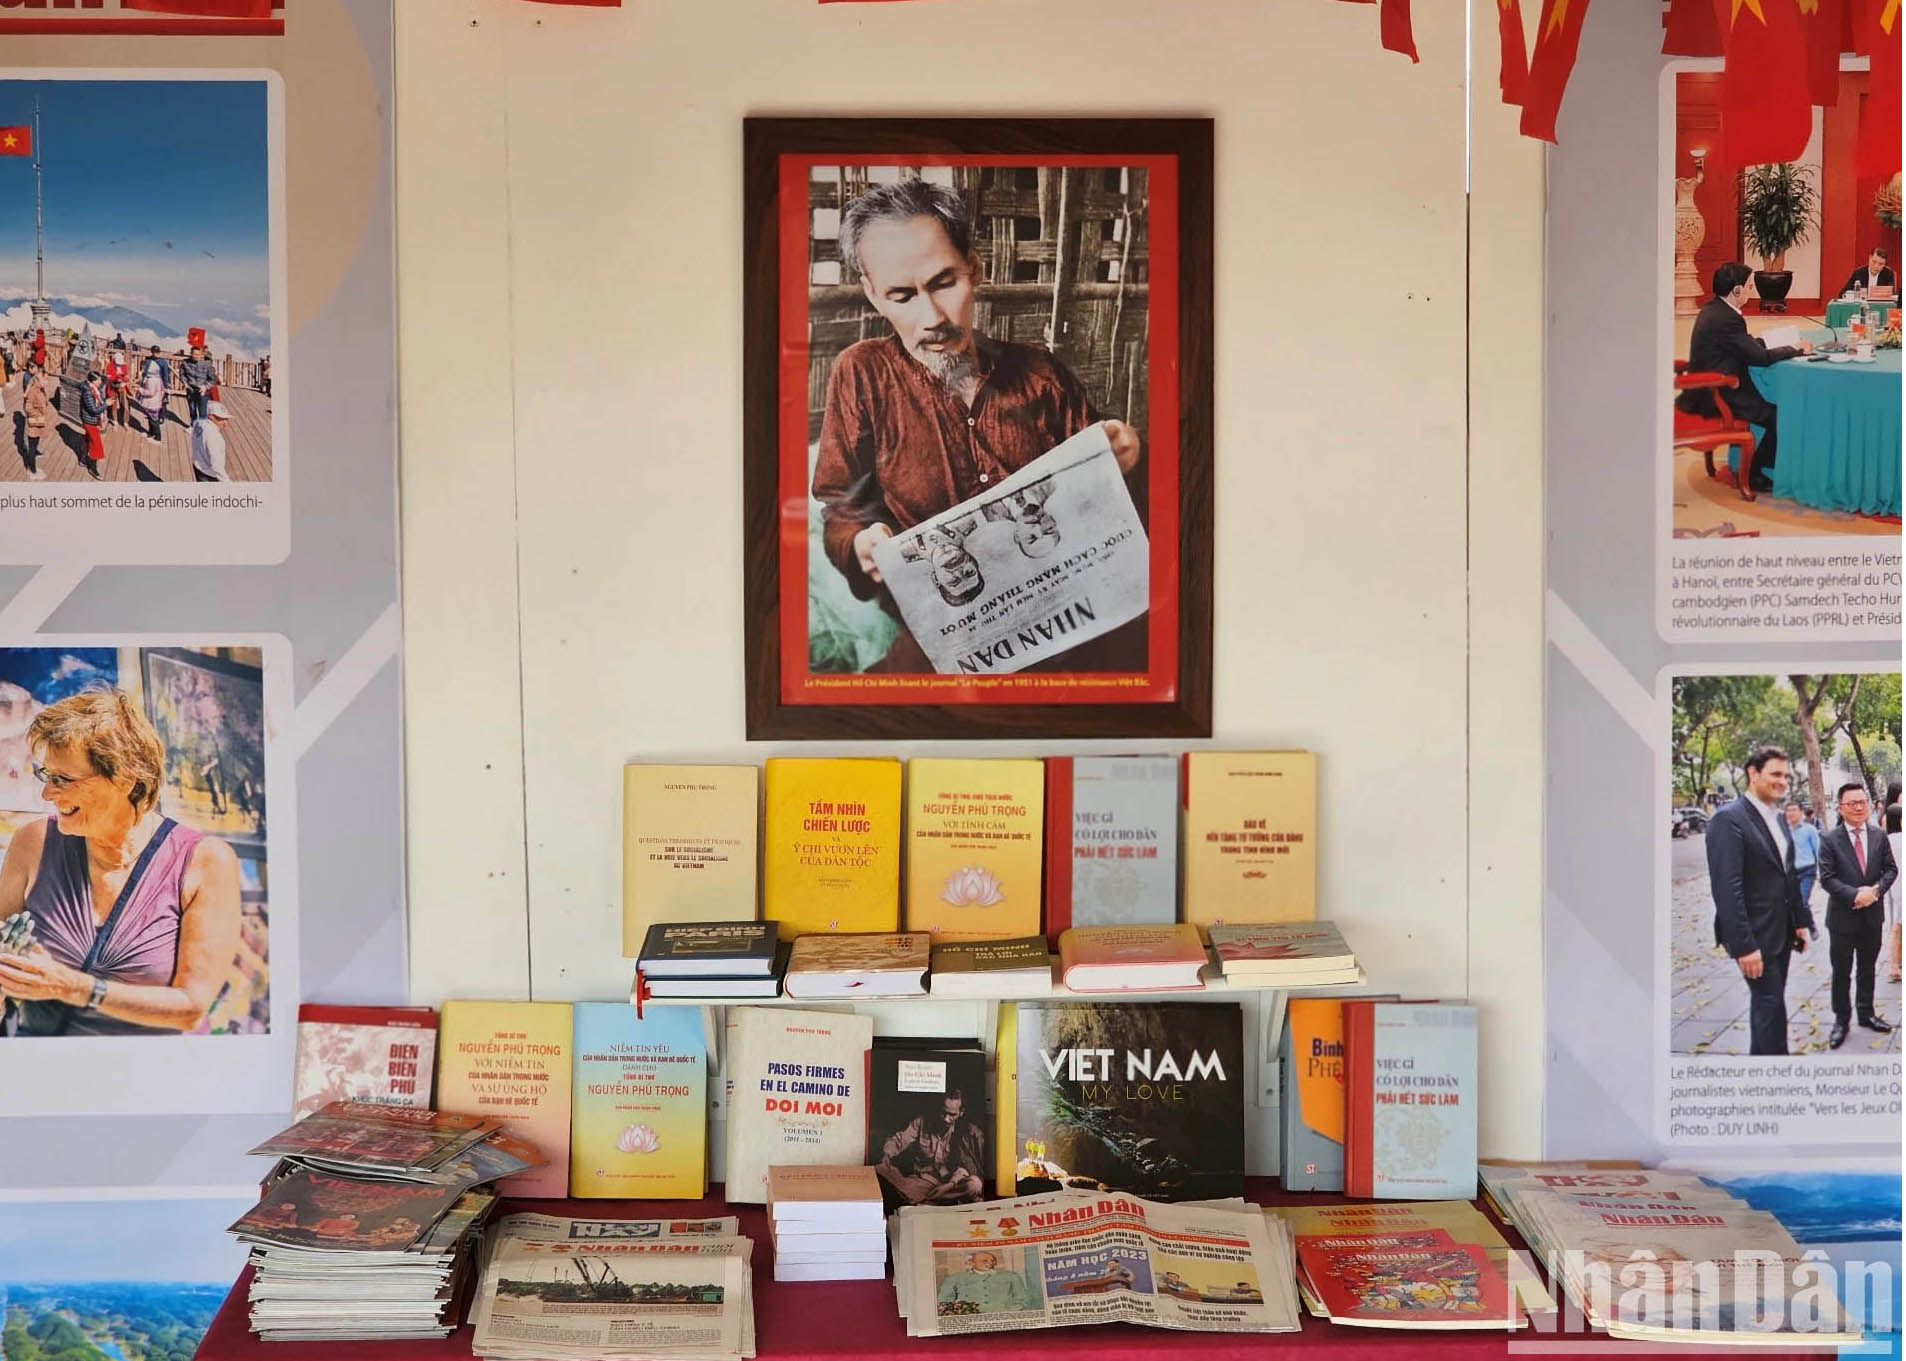 rưng bày sách và các ấn phẩm về Chủ tịch Hồ Chí Minh, Đảng Cộng sản Việt Nam, công cuộc đổi mới và hội nhập quốc tế.